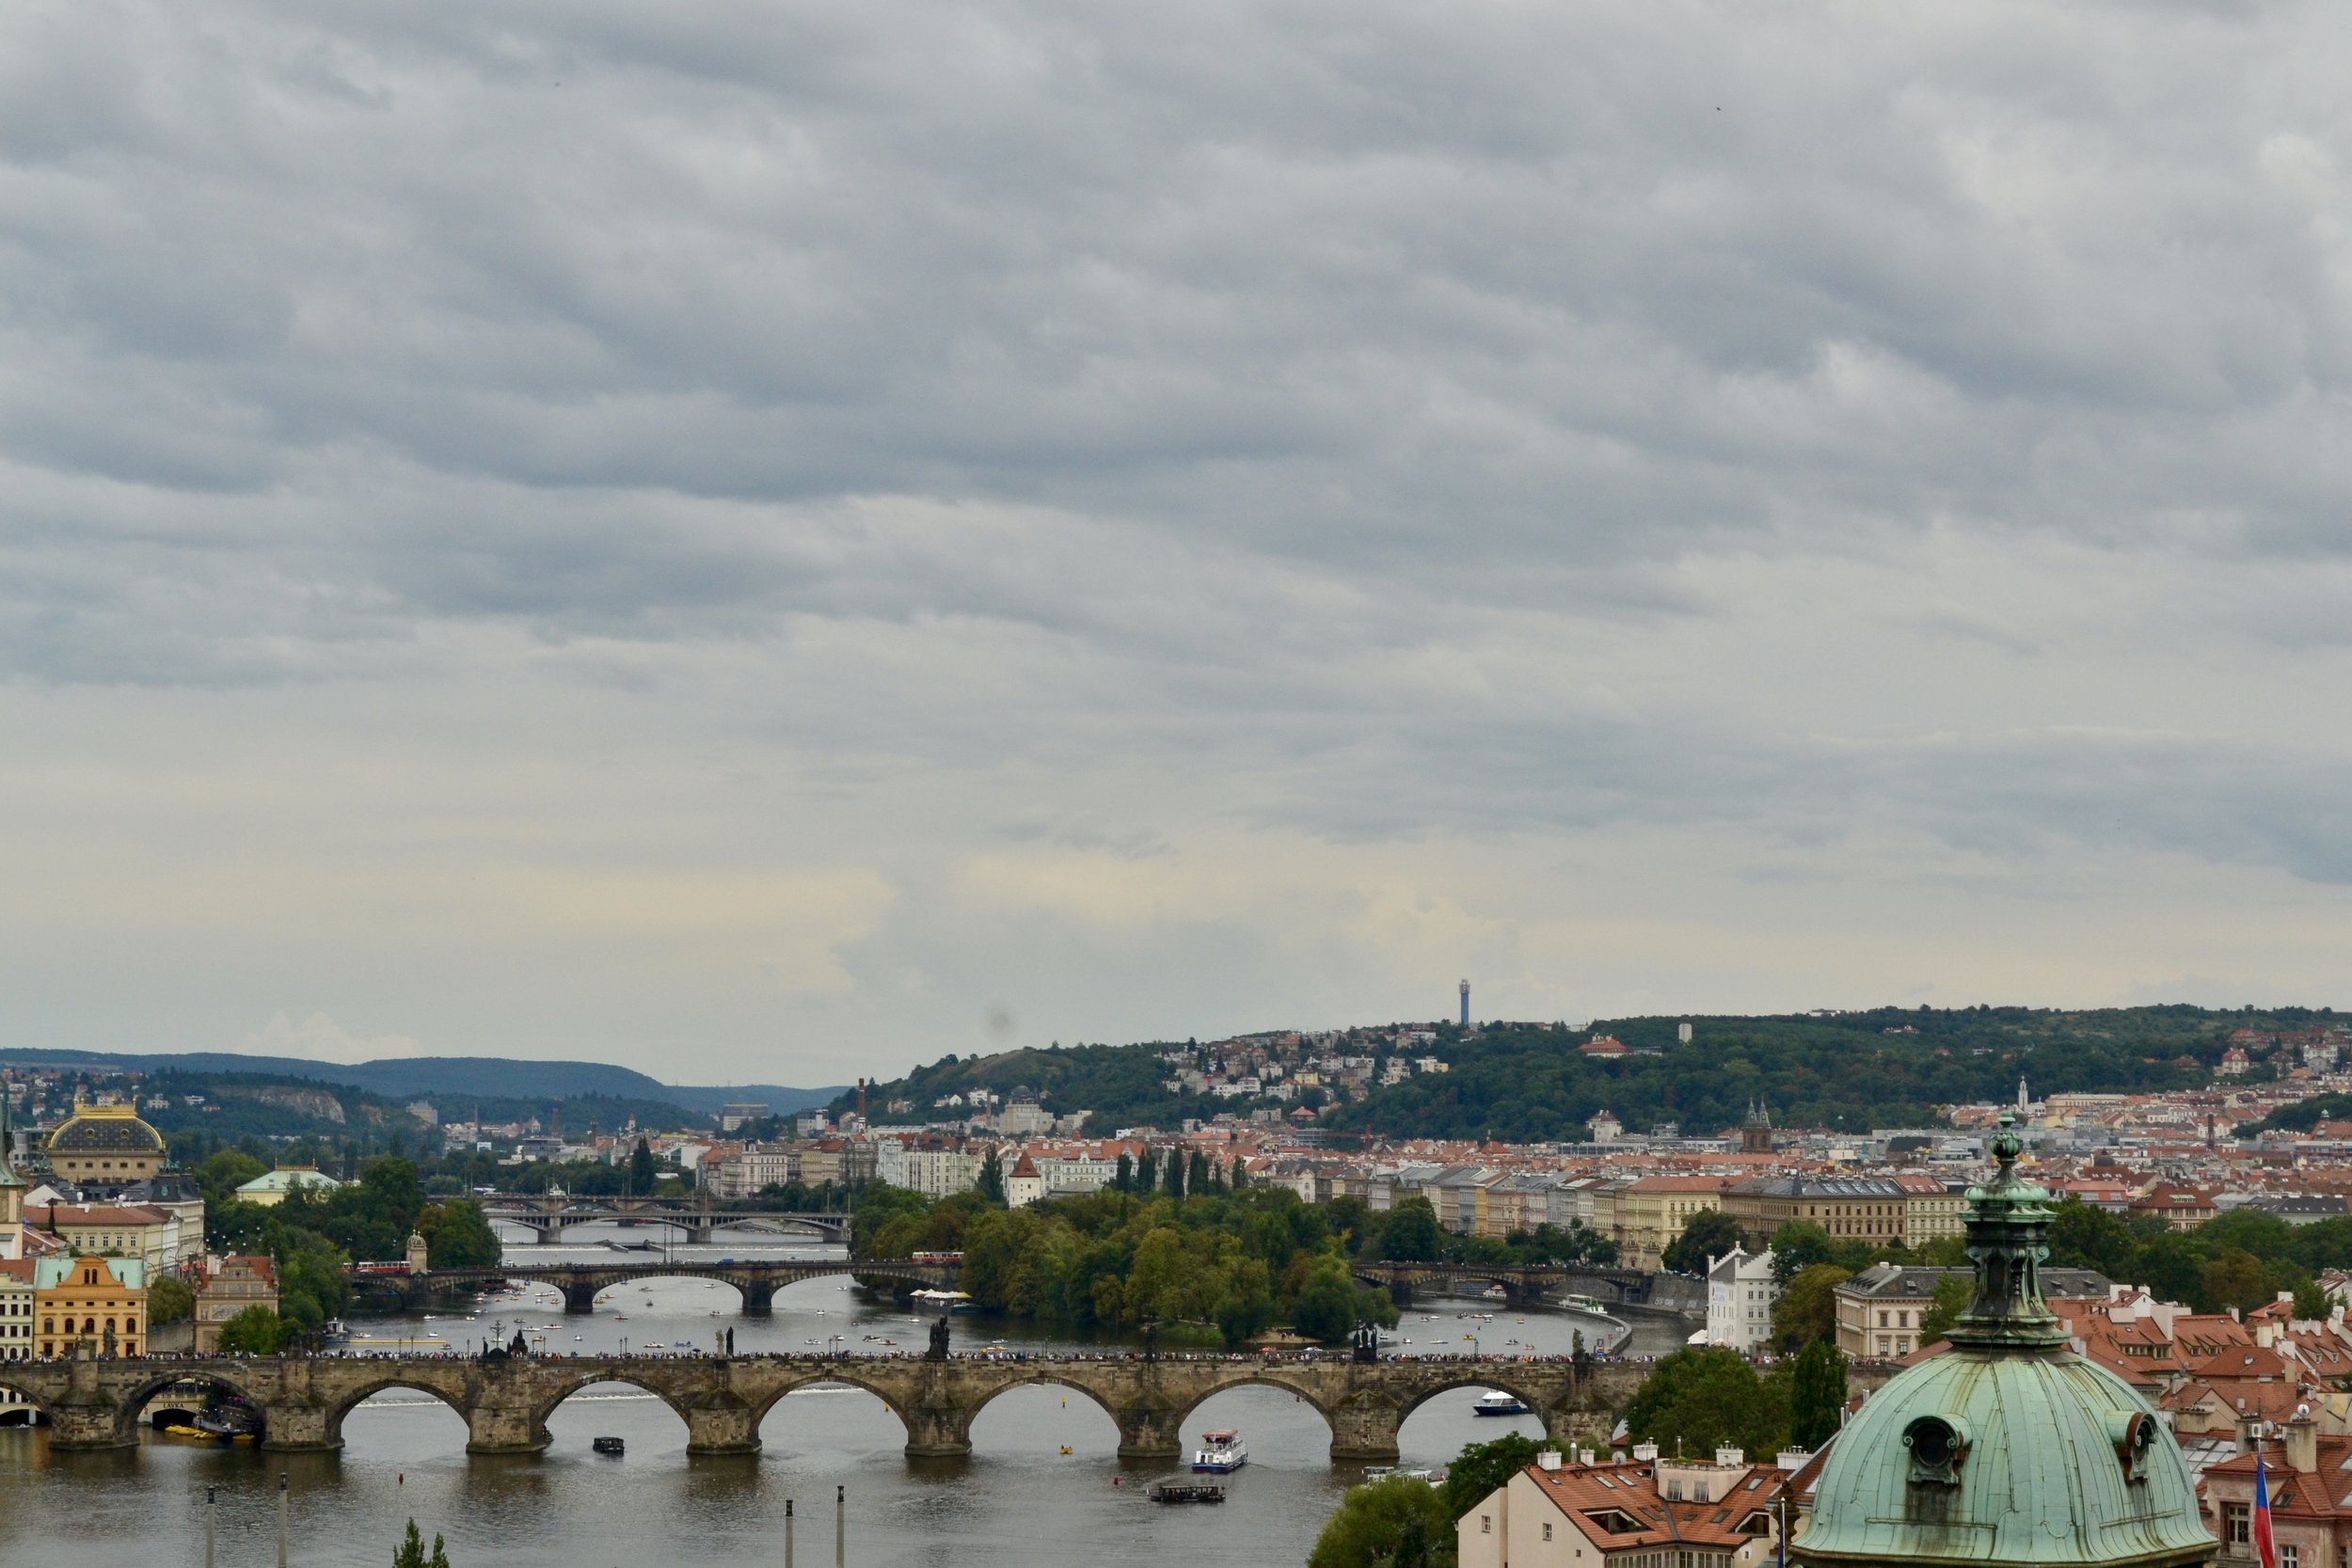  Prague, Czech Republic | Czech Republic 